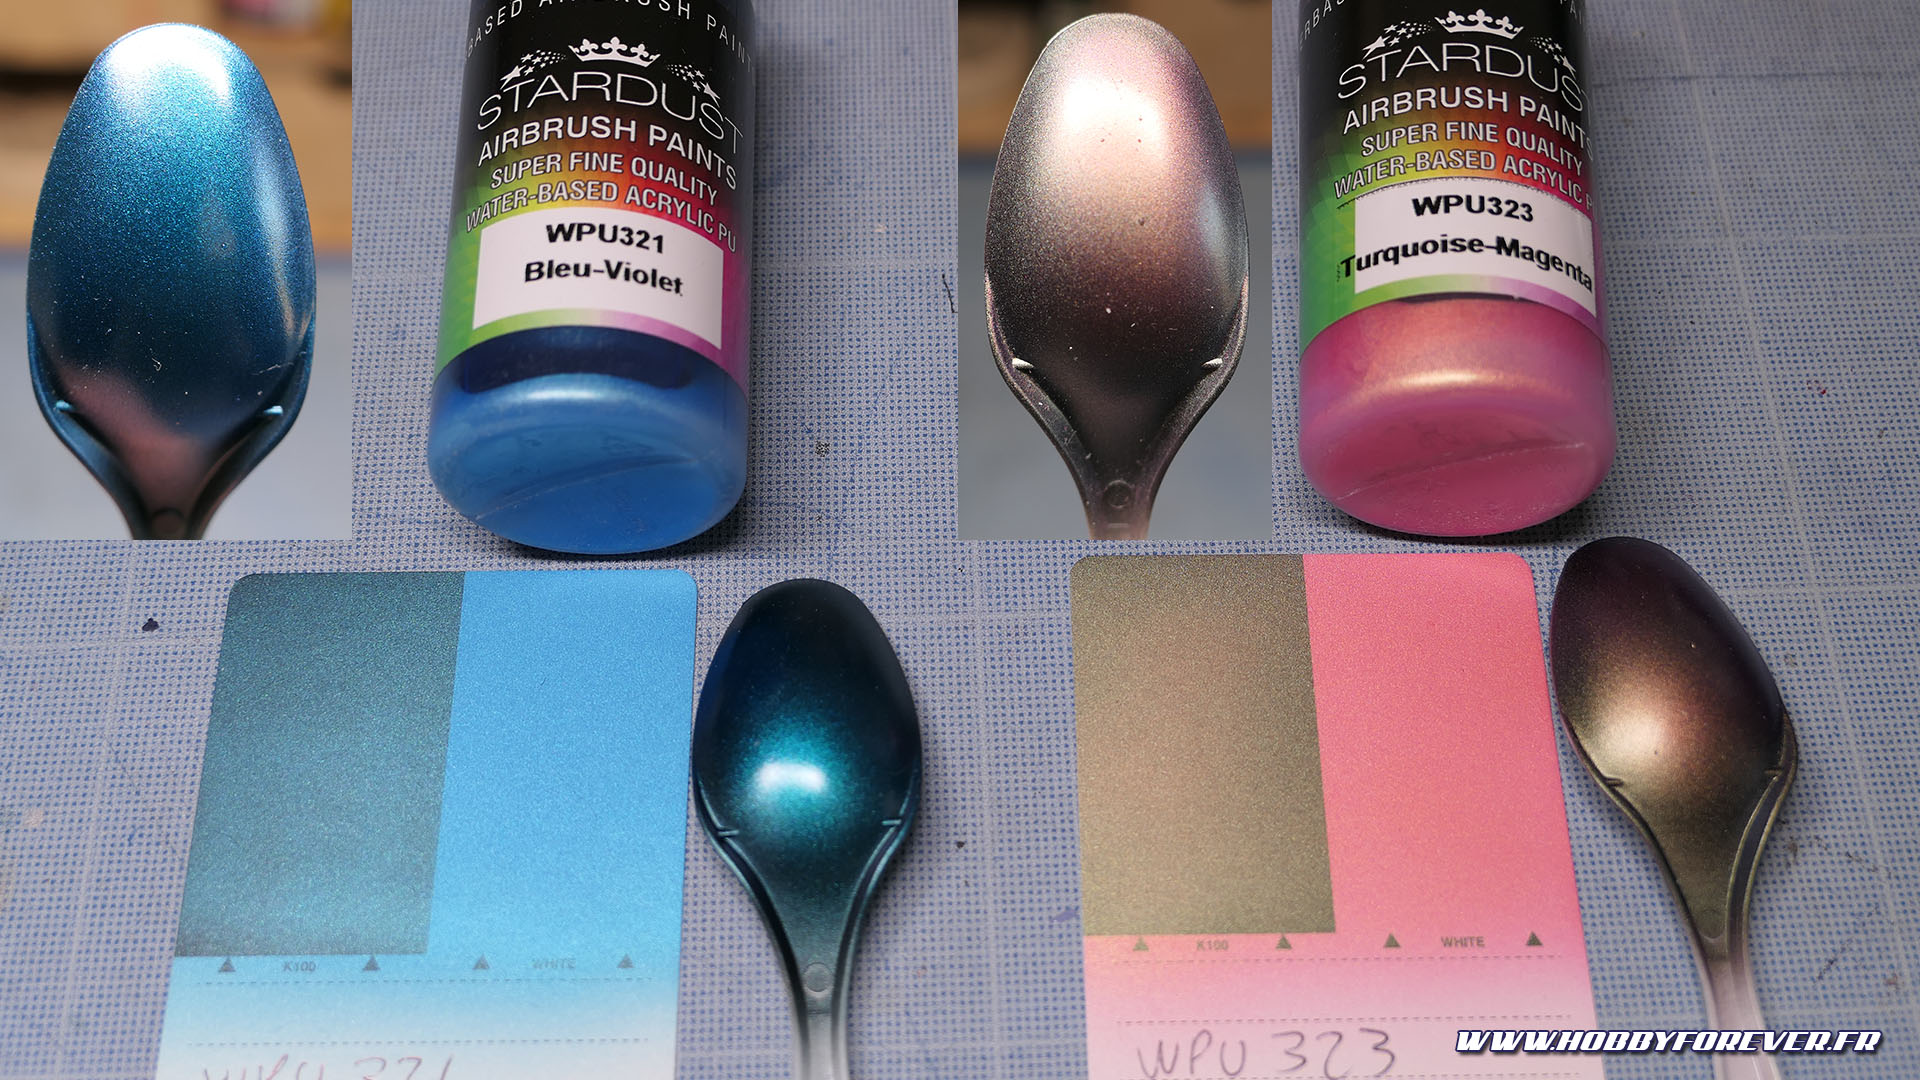 Les peintures acrylique-polyuréthane Stardust Pro de Stardustcolors